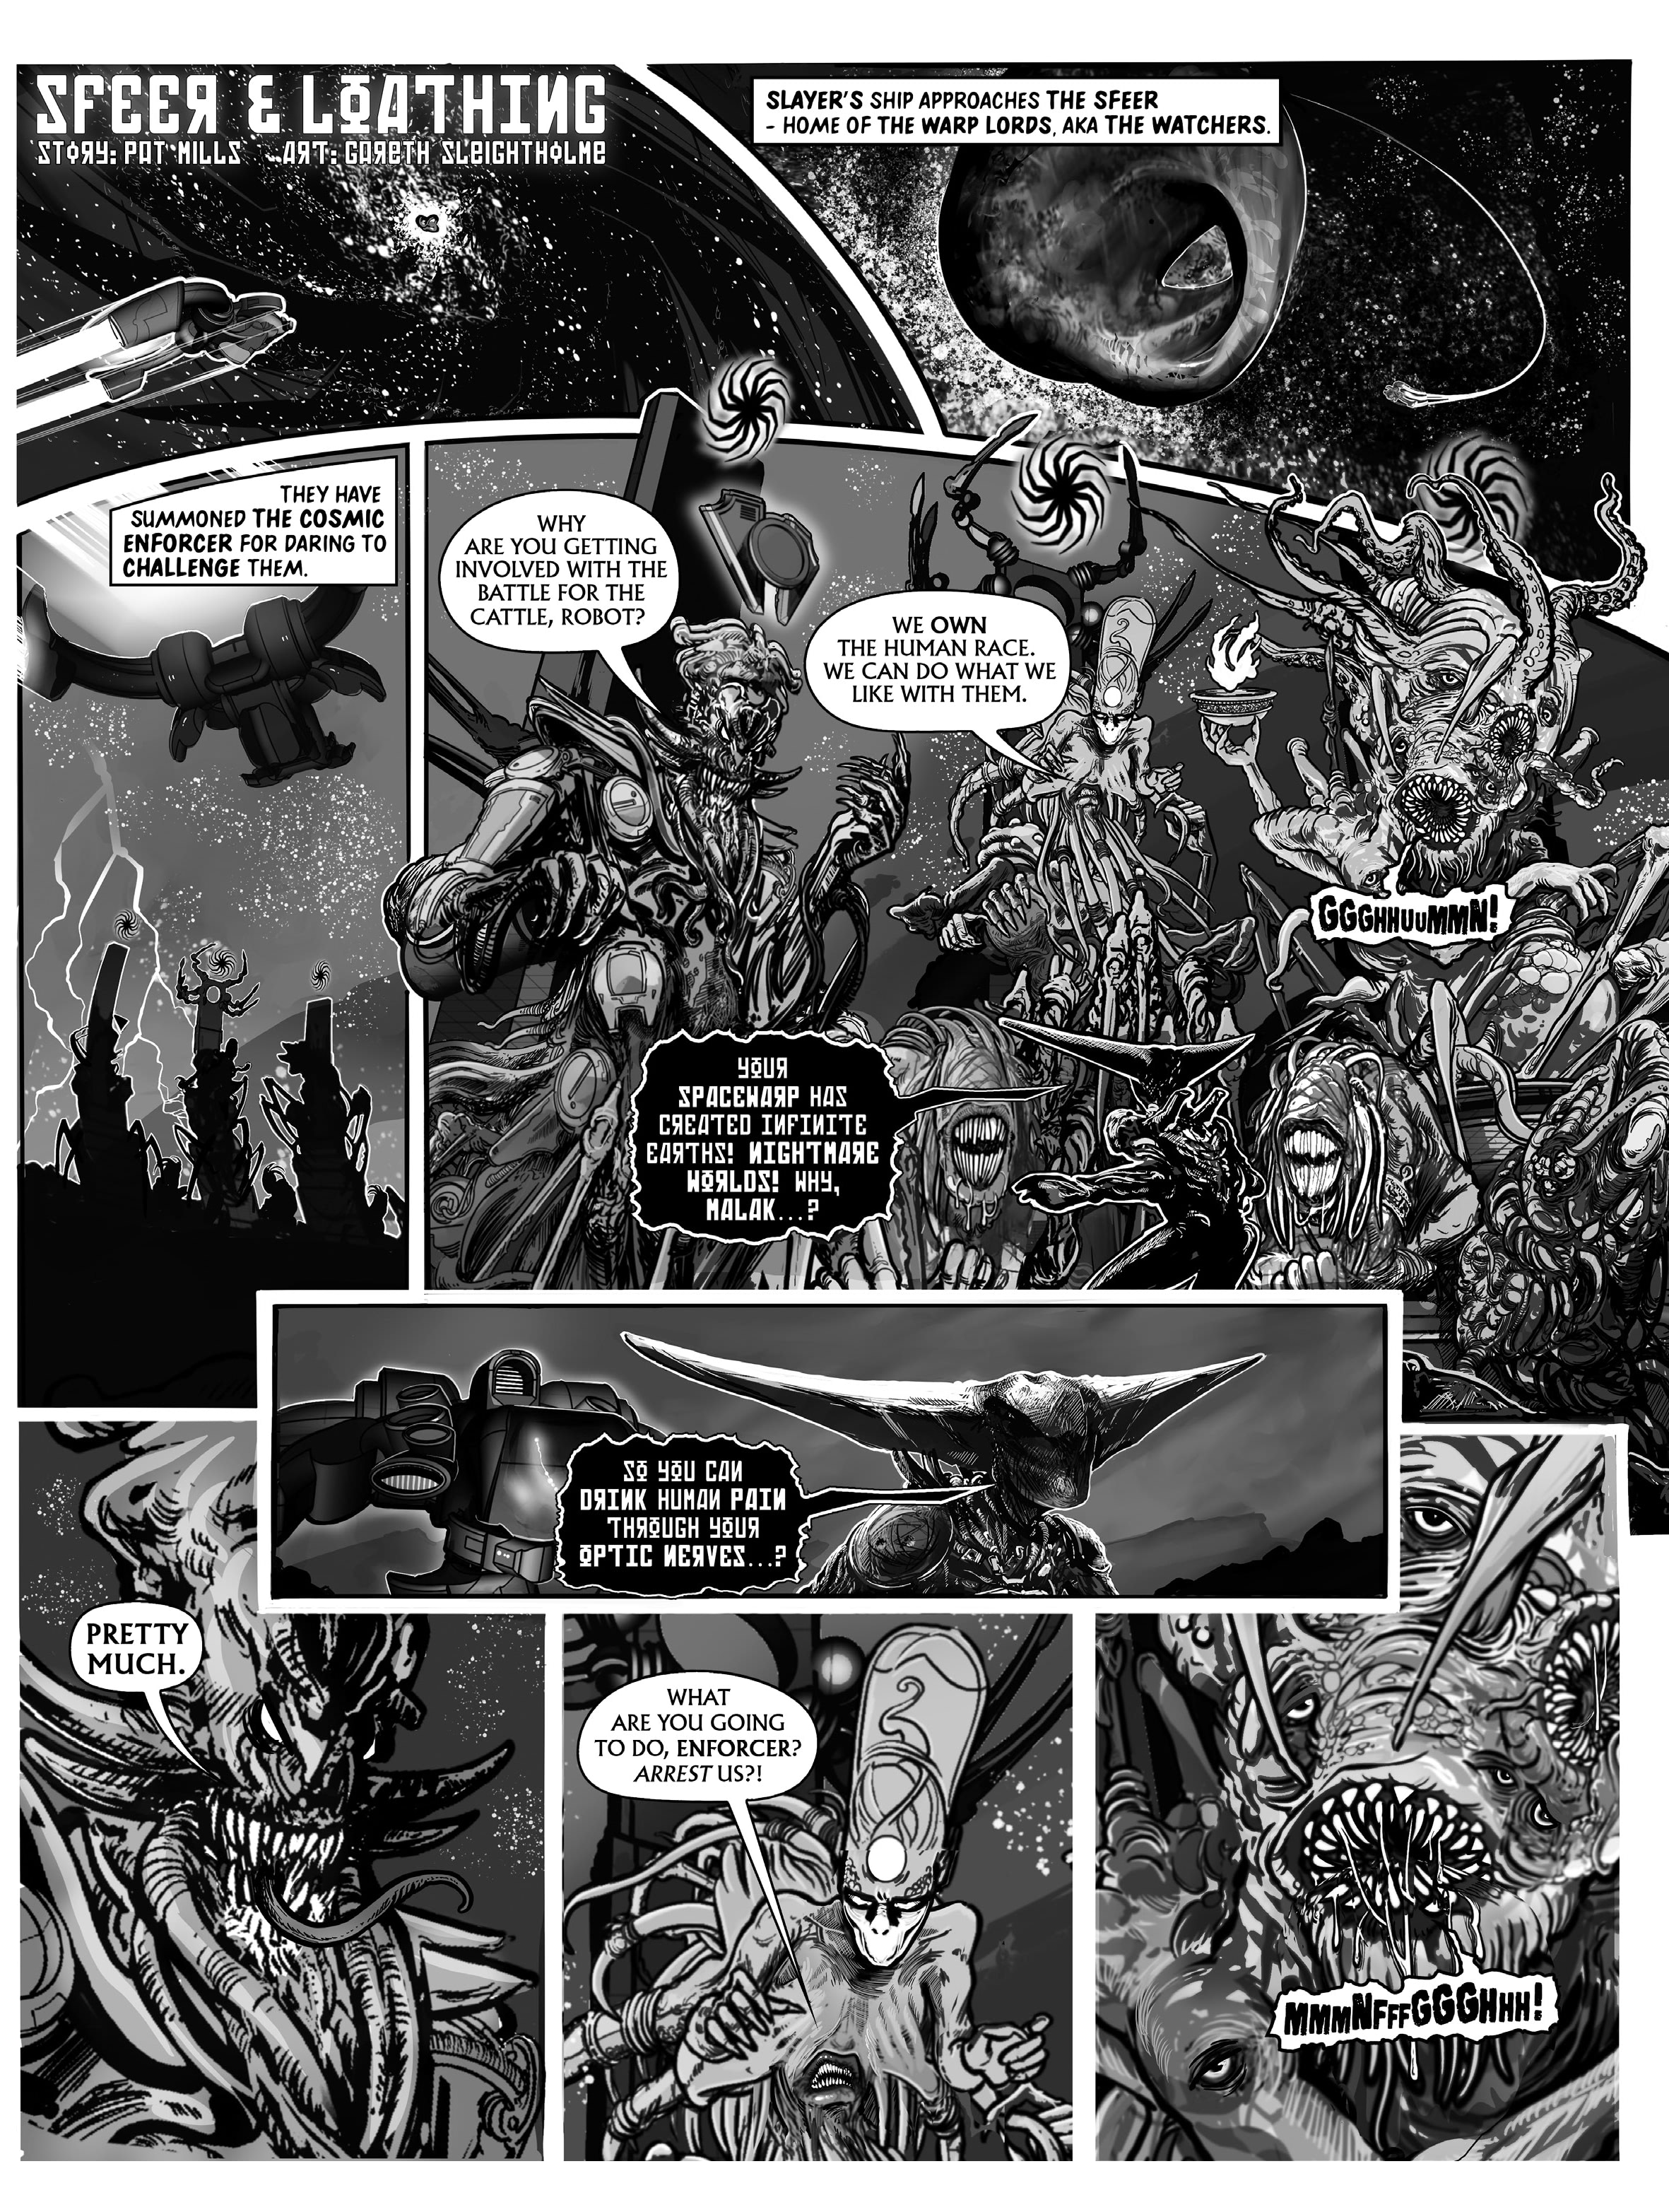 Spacewarp (2020-): Chapter 1 - Page 4